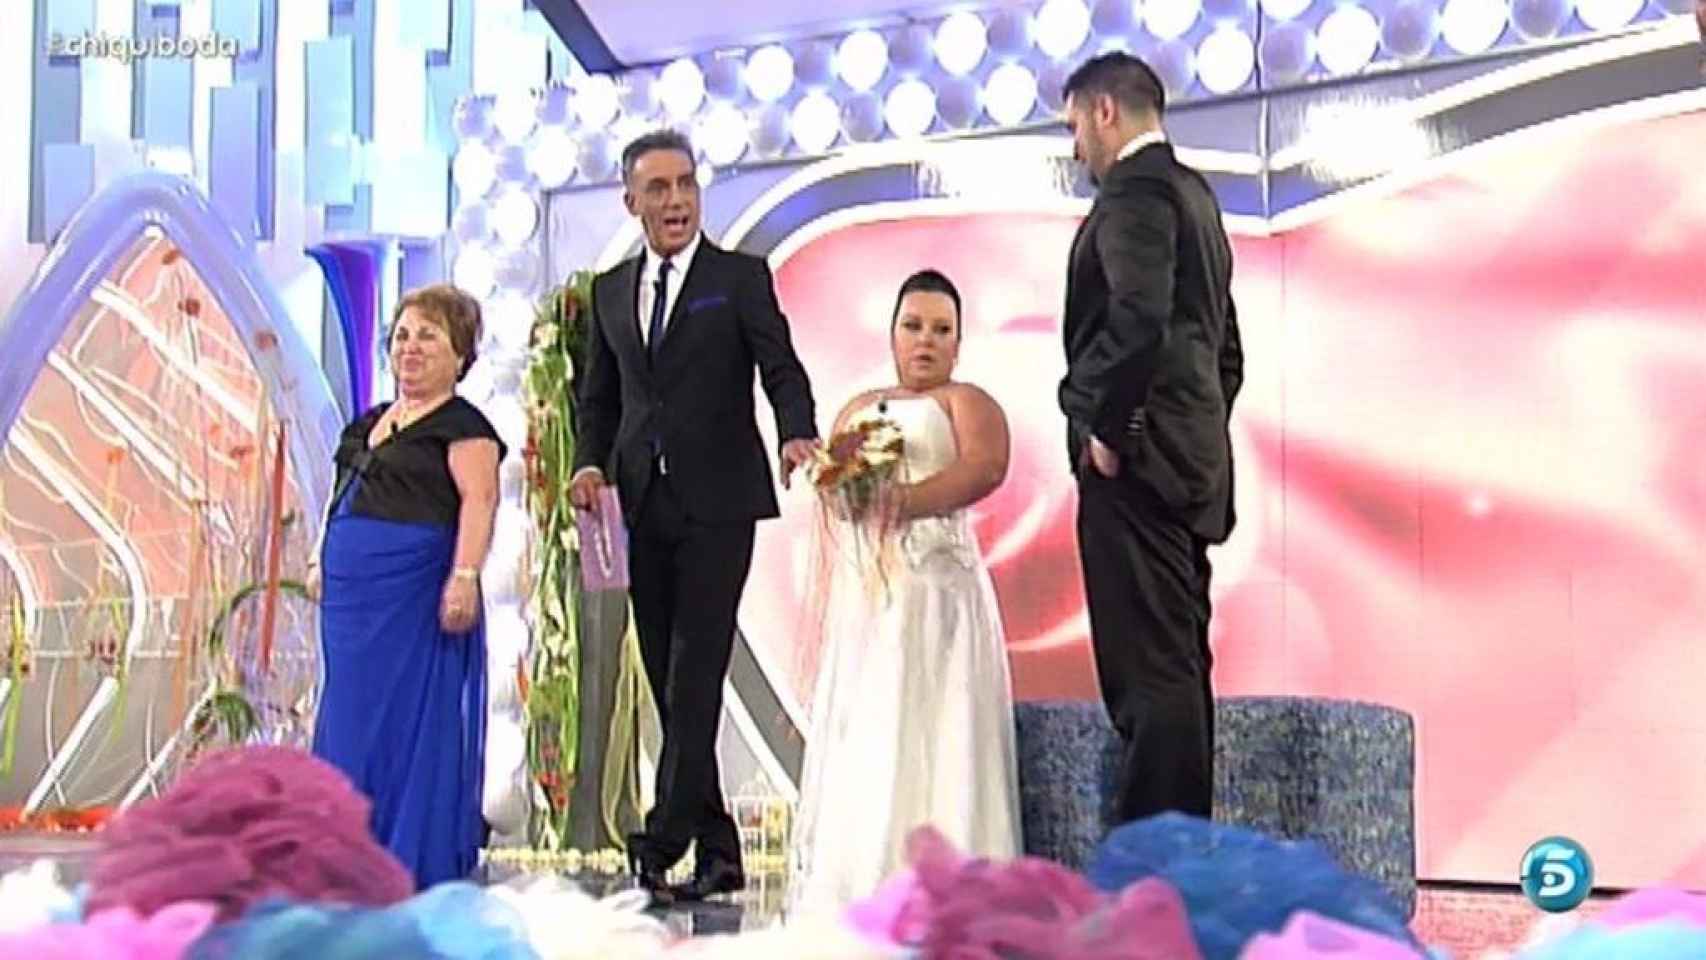 Chiqui y Borja en su boda celebrada en el programa 'Las bodas de Sálvame'.